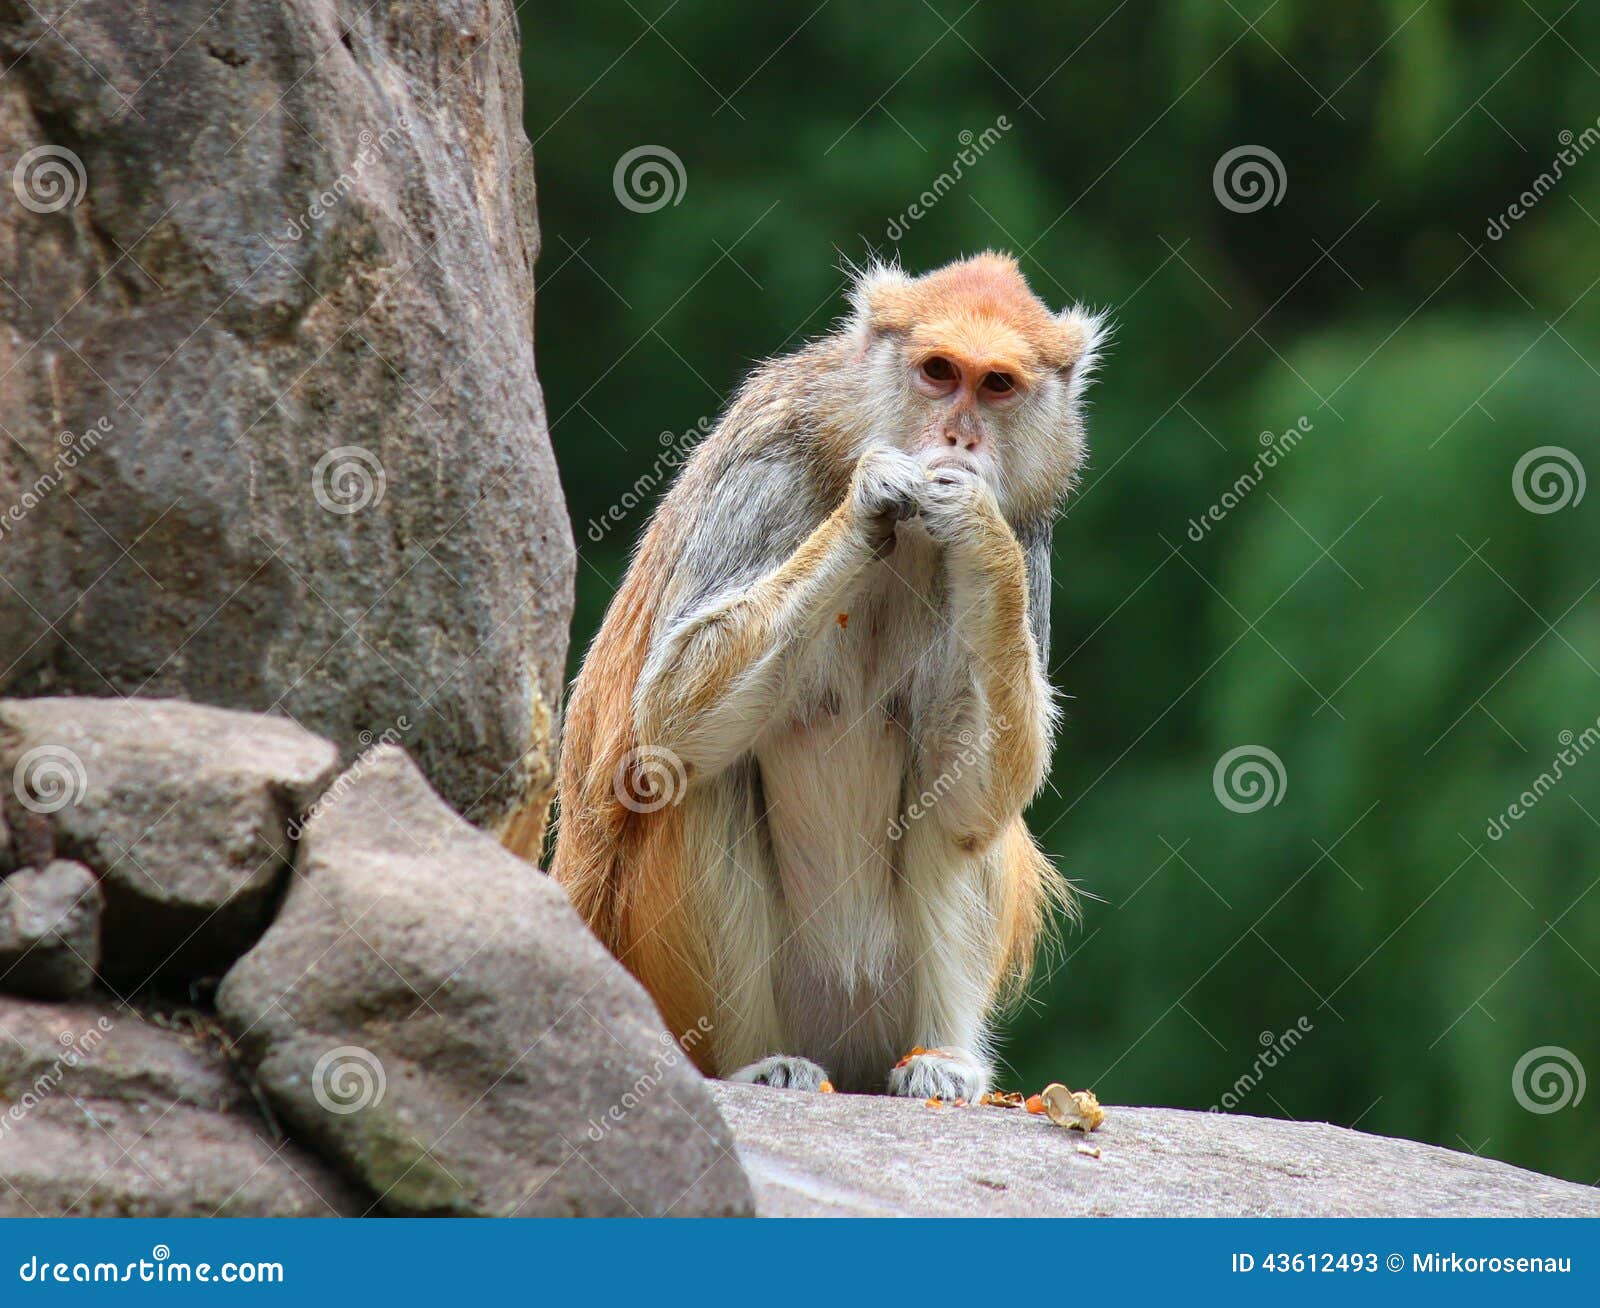 patas monkey erythrocebus patas sitting on rock eating